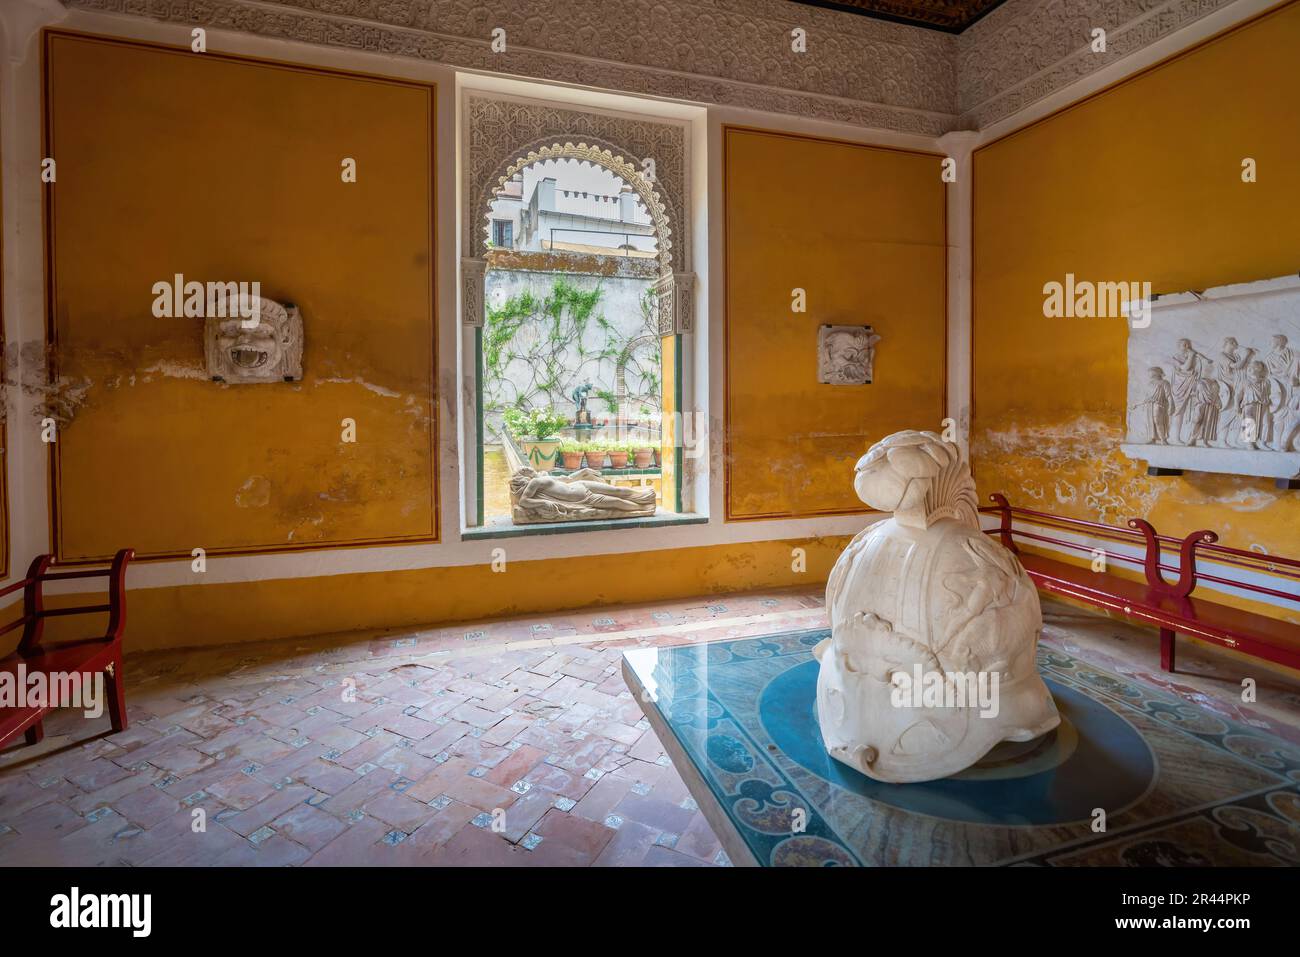 Golden Room (Salon Dorado) at Casa de Pilatos (Pilates House) Palace Interior - Seville, Andalusia, Spain Stock Photo